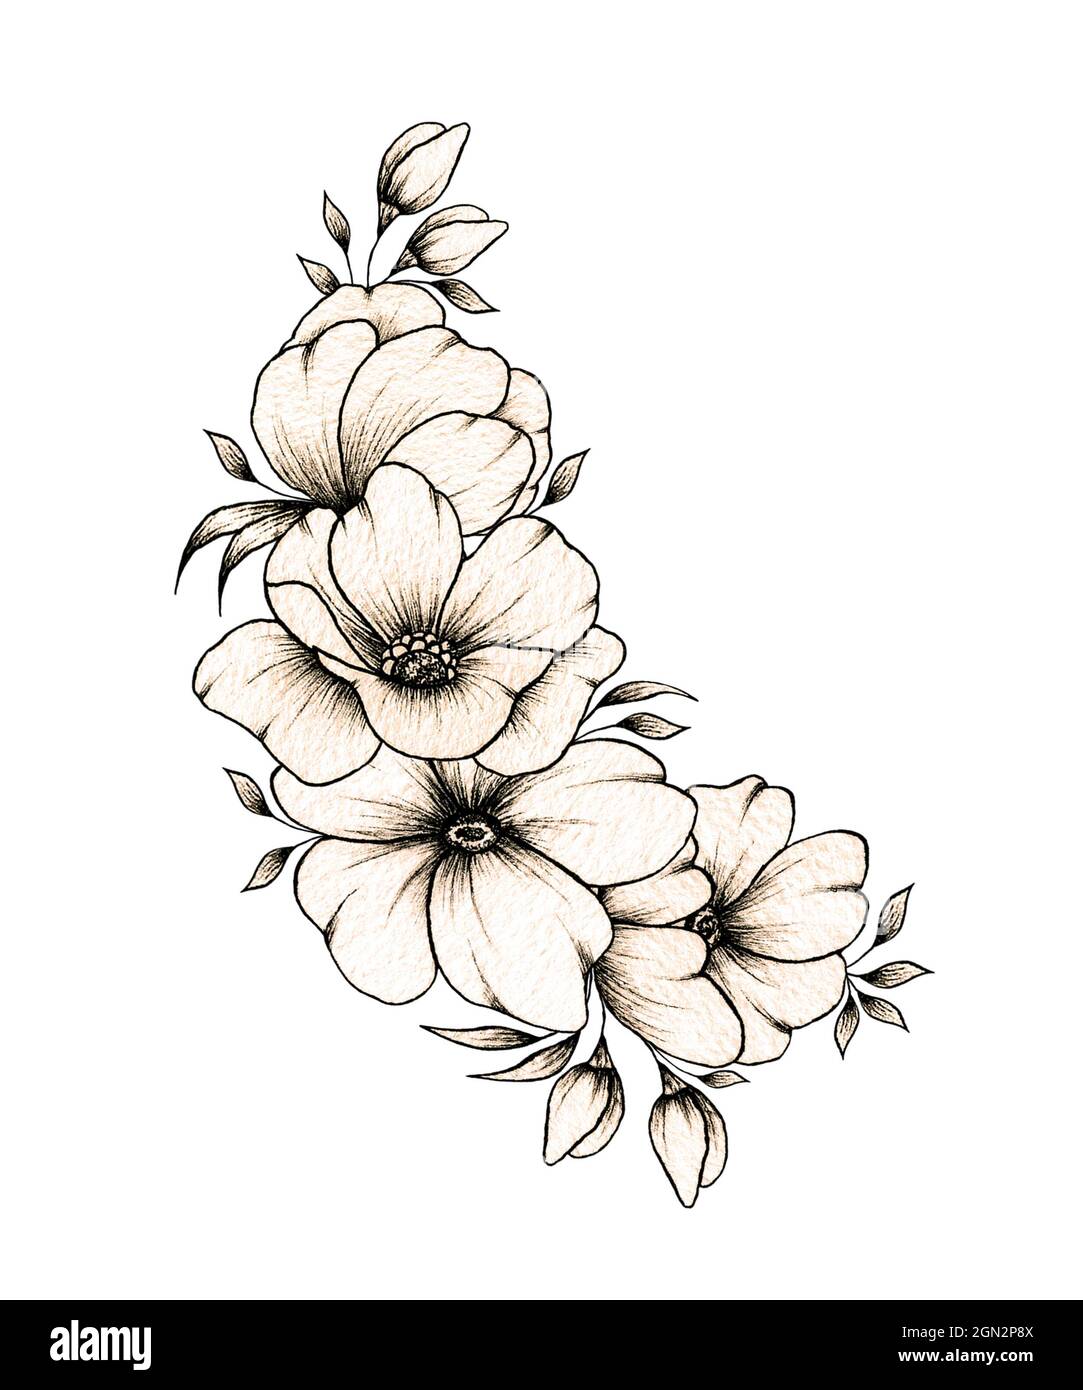 fancy flowers drawings